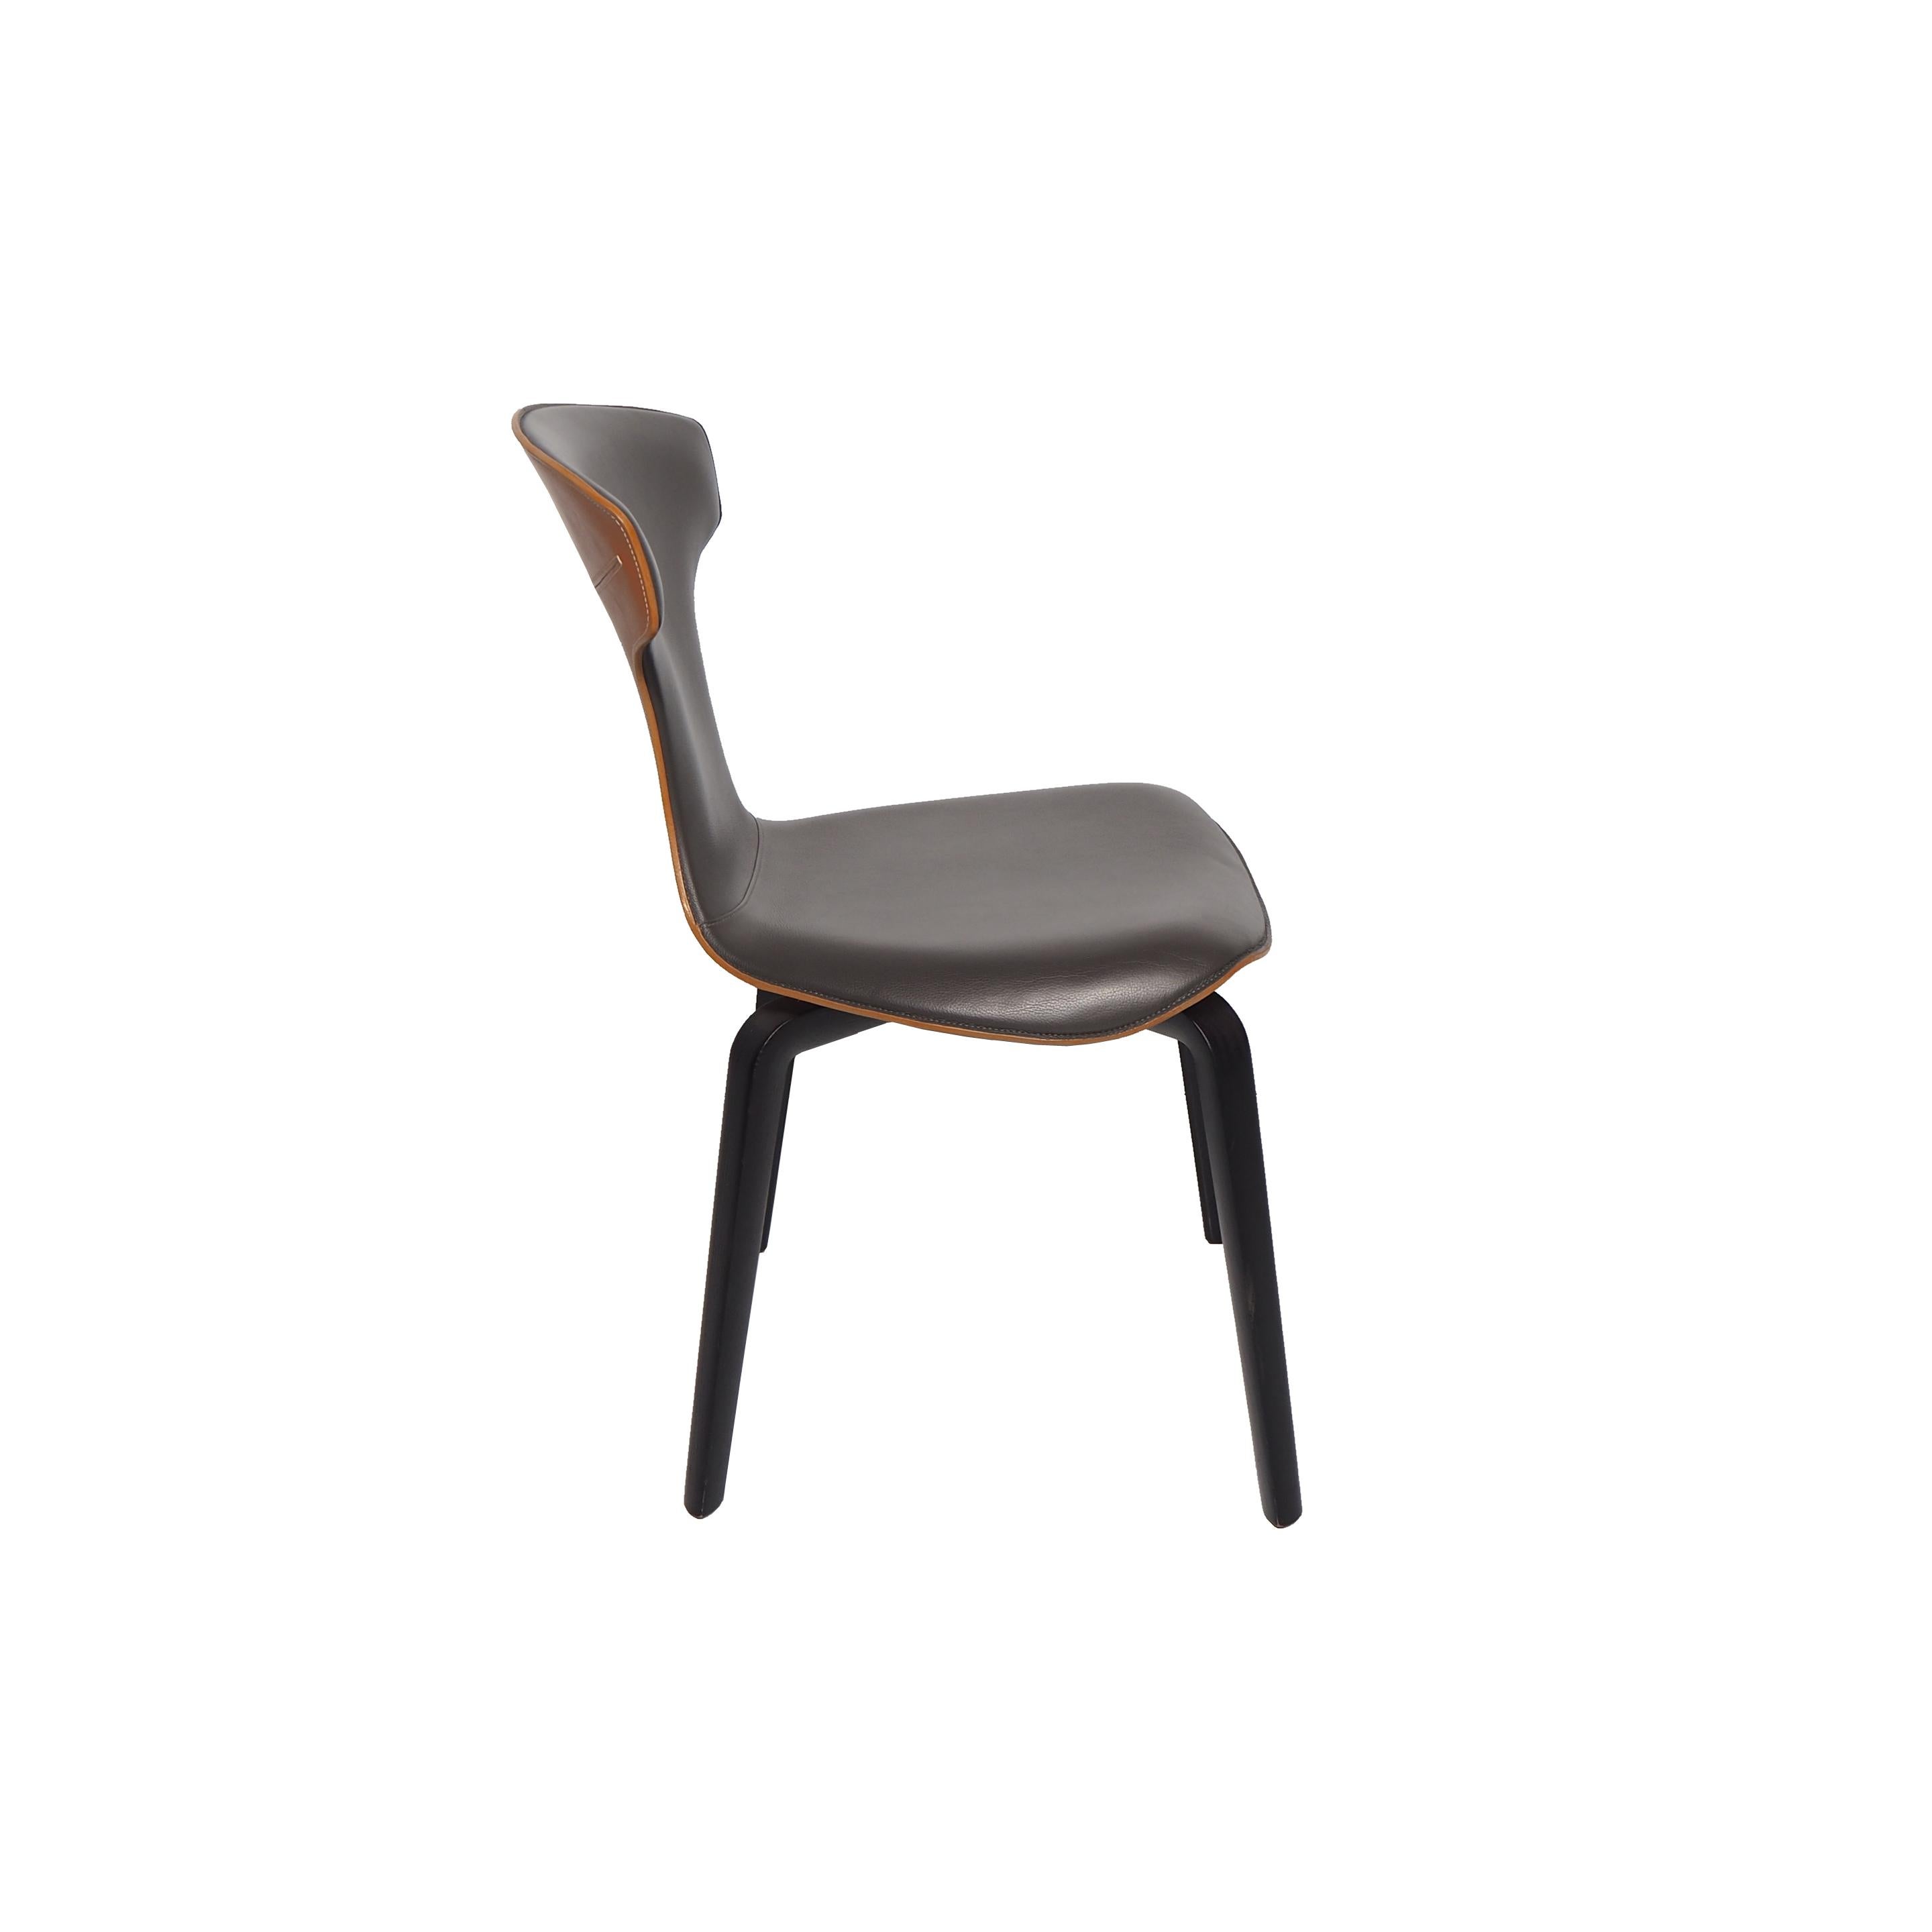 La chaise Montera, conçue par Roberto Lazzeroni pour Poltrona Frau, a une légèreté formelle qui exprime le charme sensoriel de ses matériaux : le traitement brut de coupe exalte la tactilité du cuir de selle et du cuir qui, combinés ensemble, se